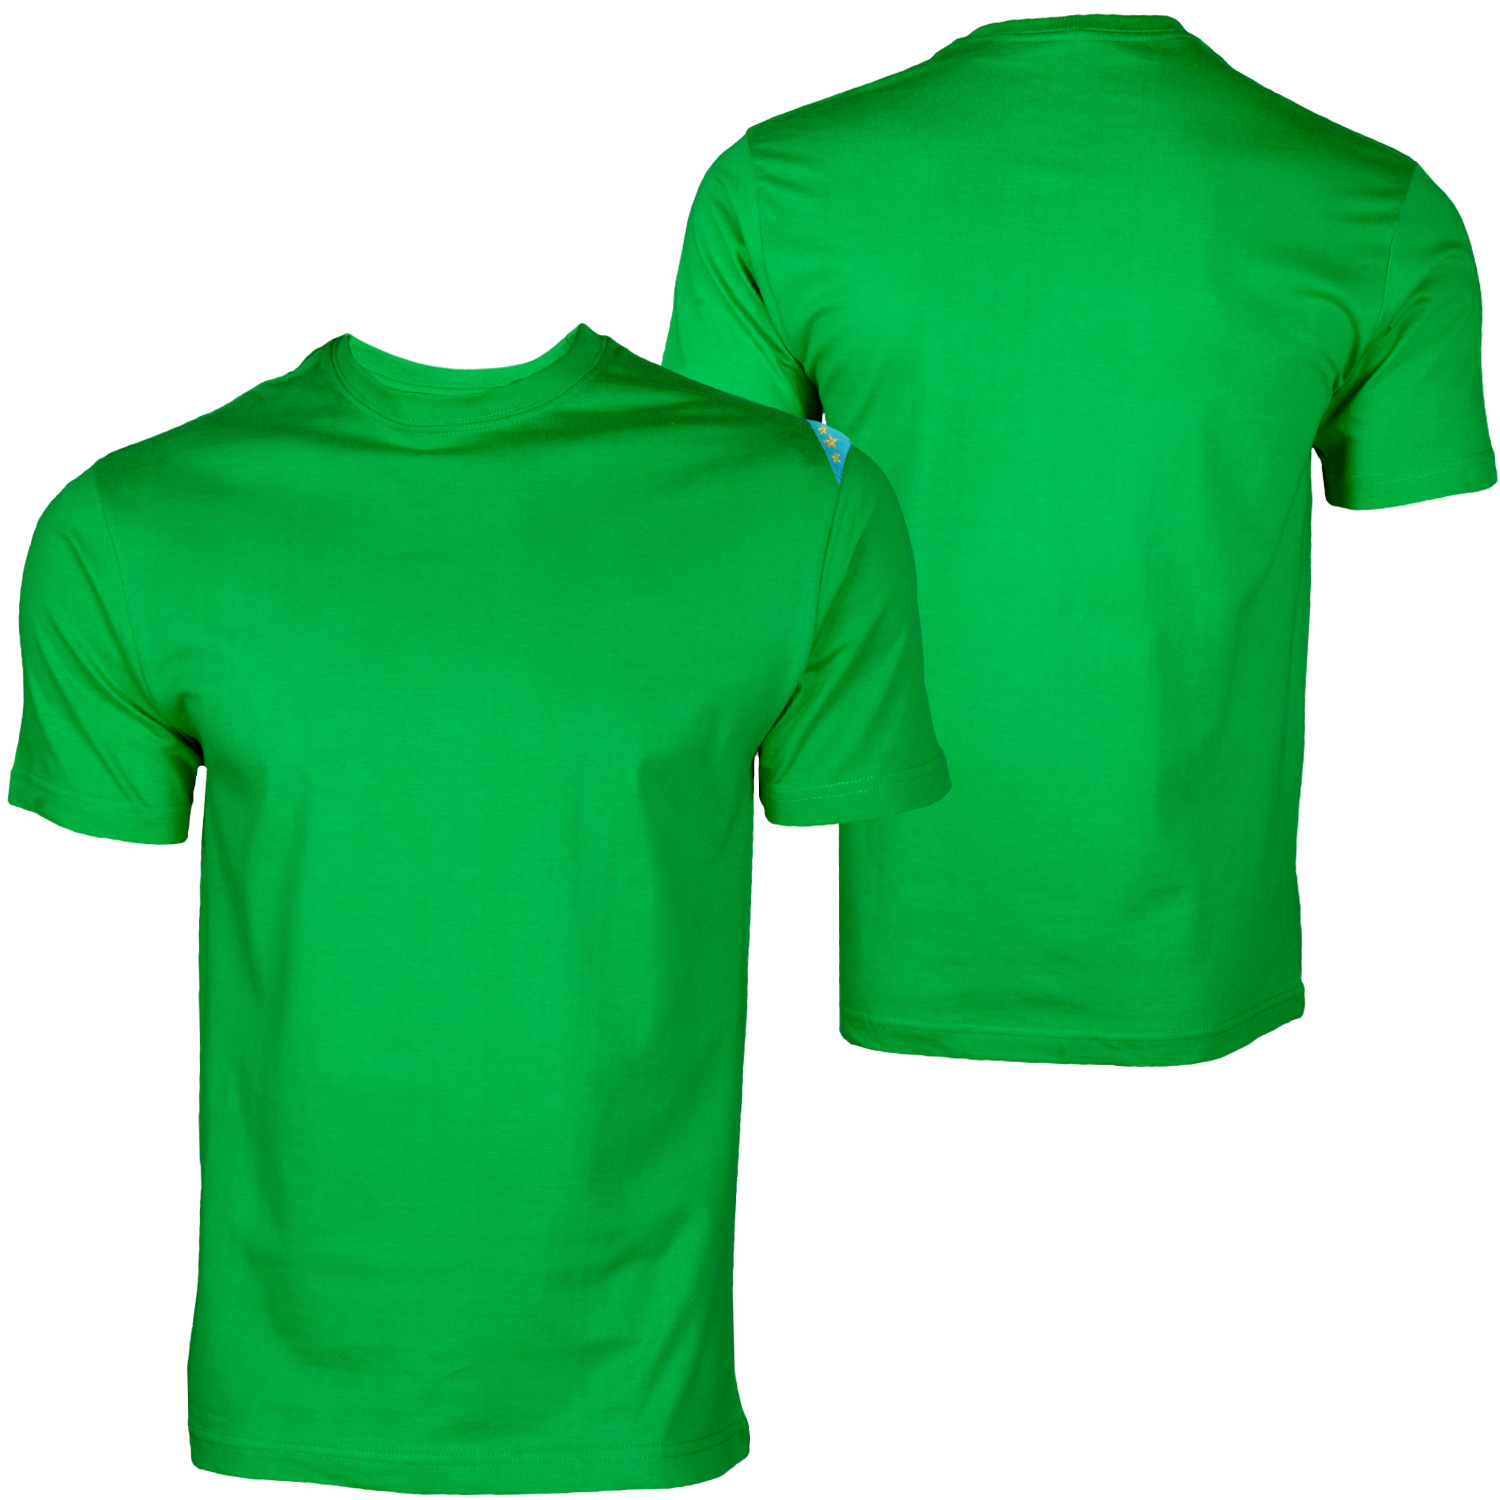 green-t-shirt-template